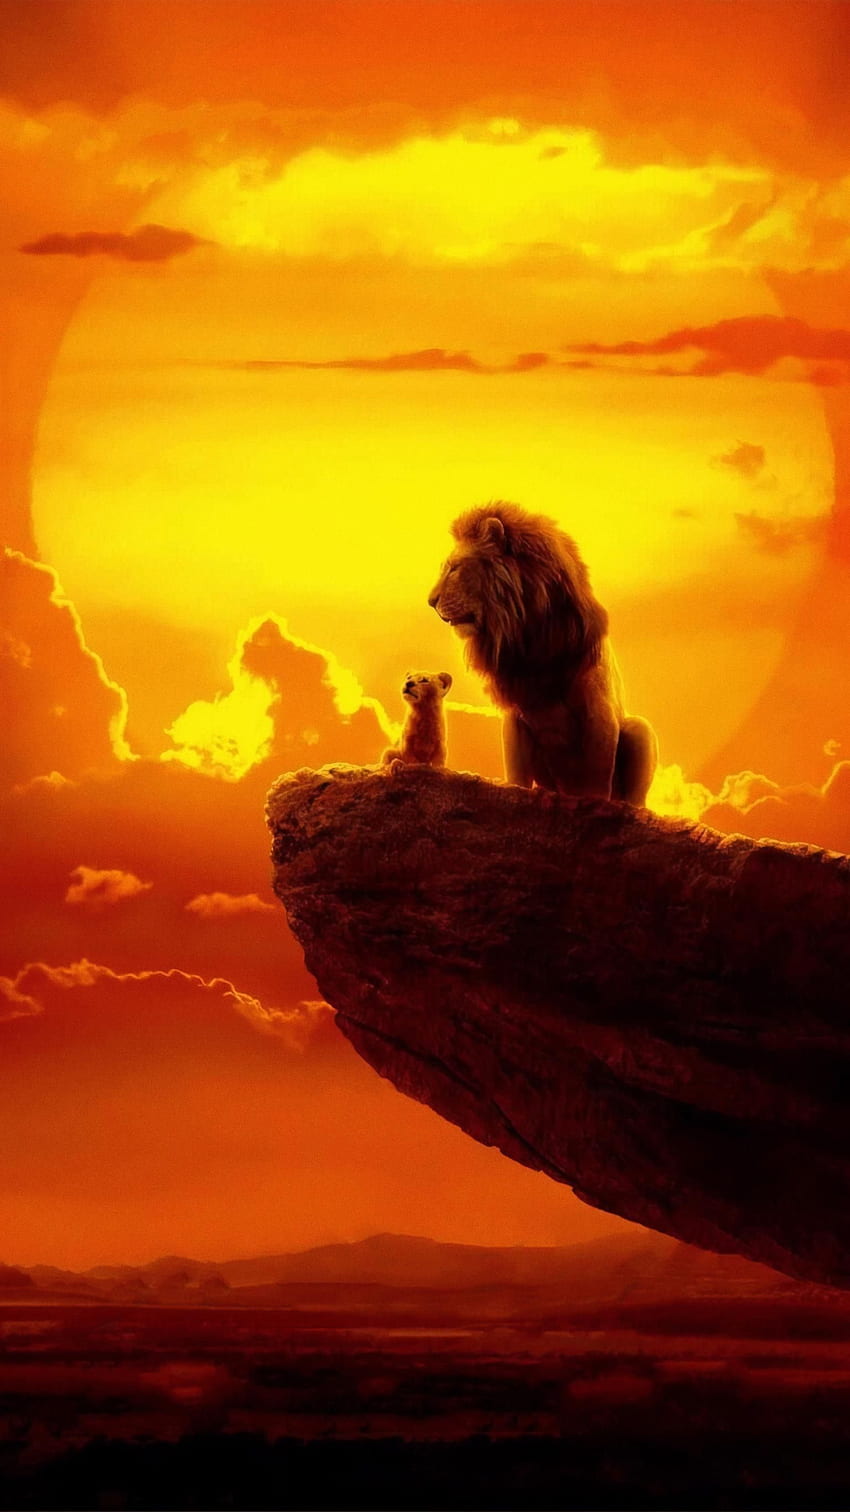 El Rey León (2019) Teléfono. Cinemanía. Rey león , póster del rey león, dibujos de Disney fondo de pantalla del teléfono